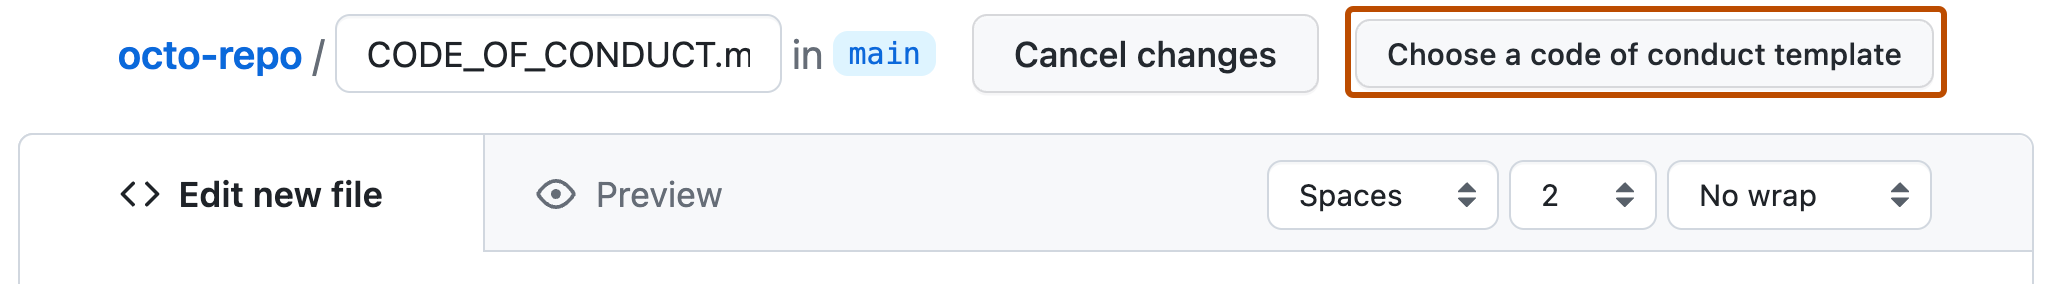 Captura de pantalla de un repositorio de GitHub en que se muestra que se está creando un archivo Markdown. Un botón a la derecha, etiquetado como "Elegir una plantilla de código de conducta", aparece resaltado con un contorno naranja oscuro.